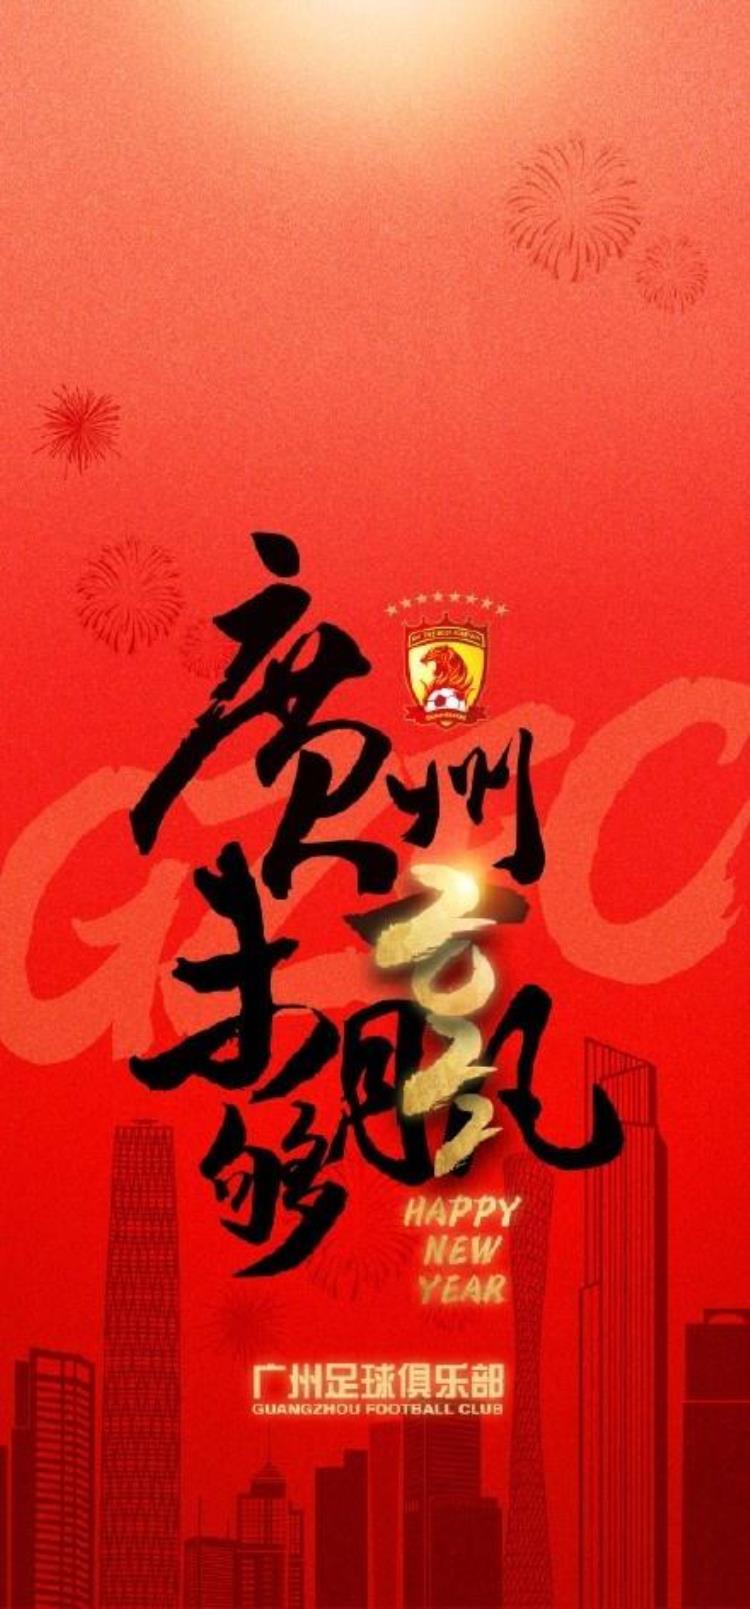 足球俱乐部 海报「广州足球俱乐部发布新年海报众虎同心继续向前」